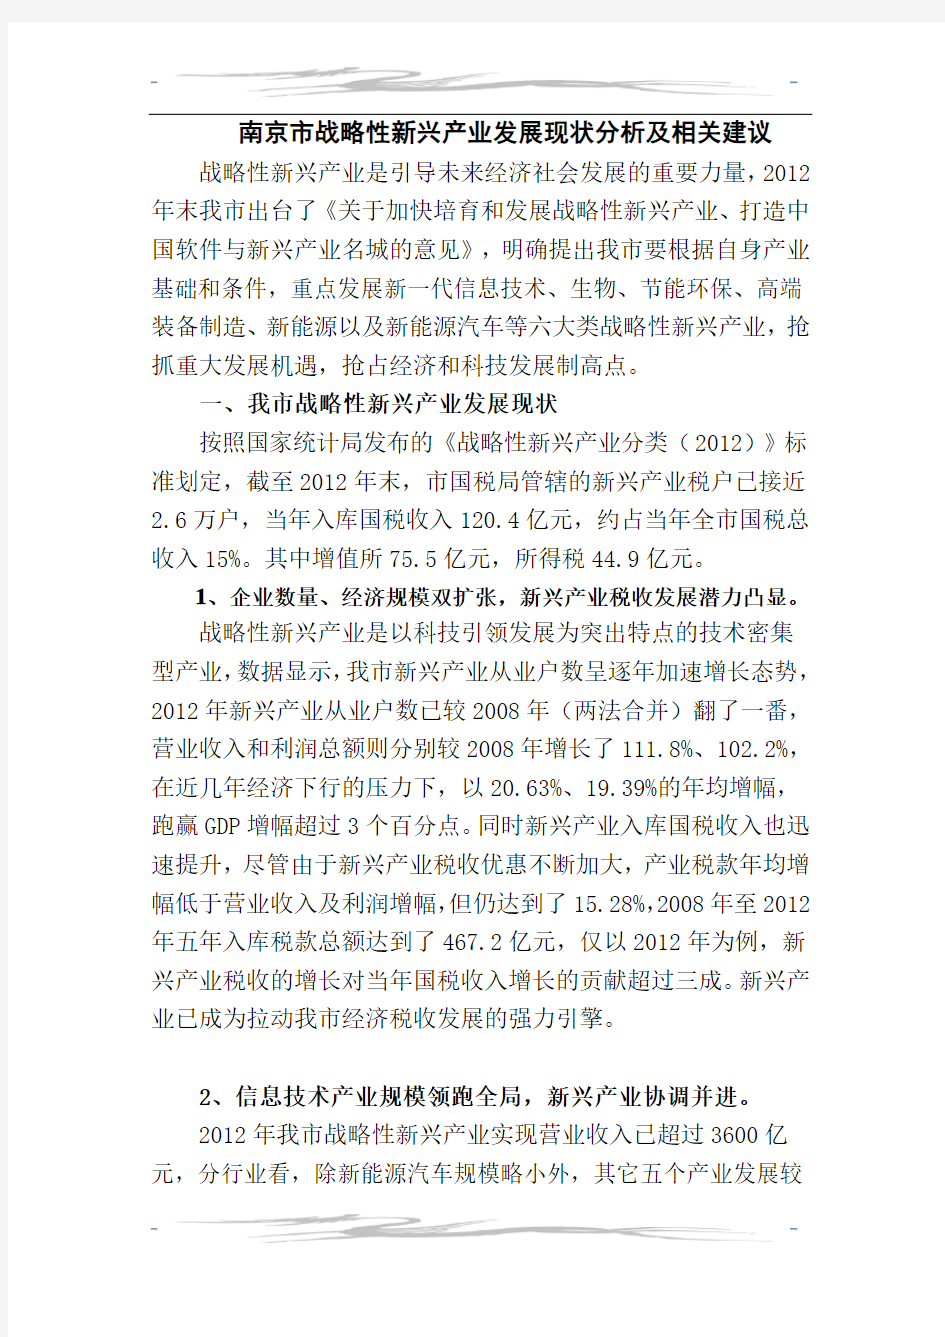 南京市战略性新兴产业发展现状分析及相关建议